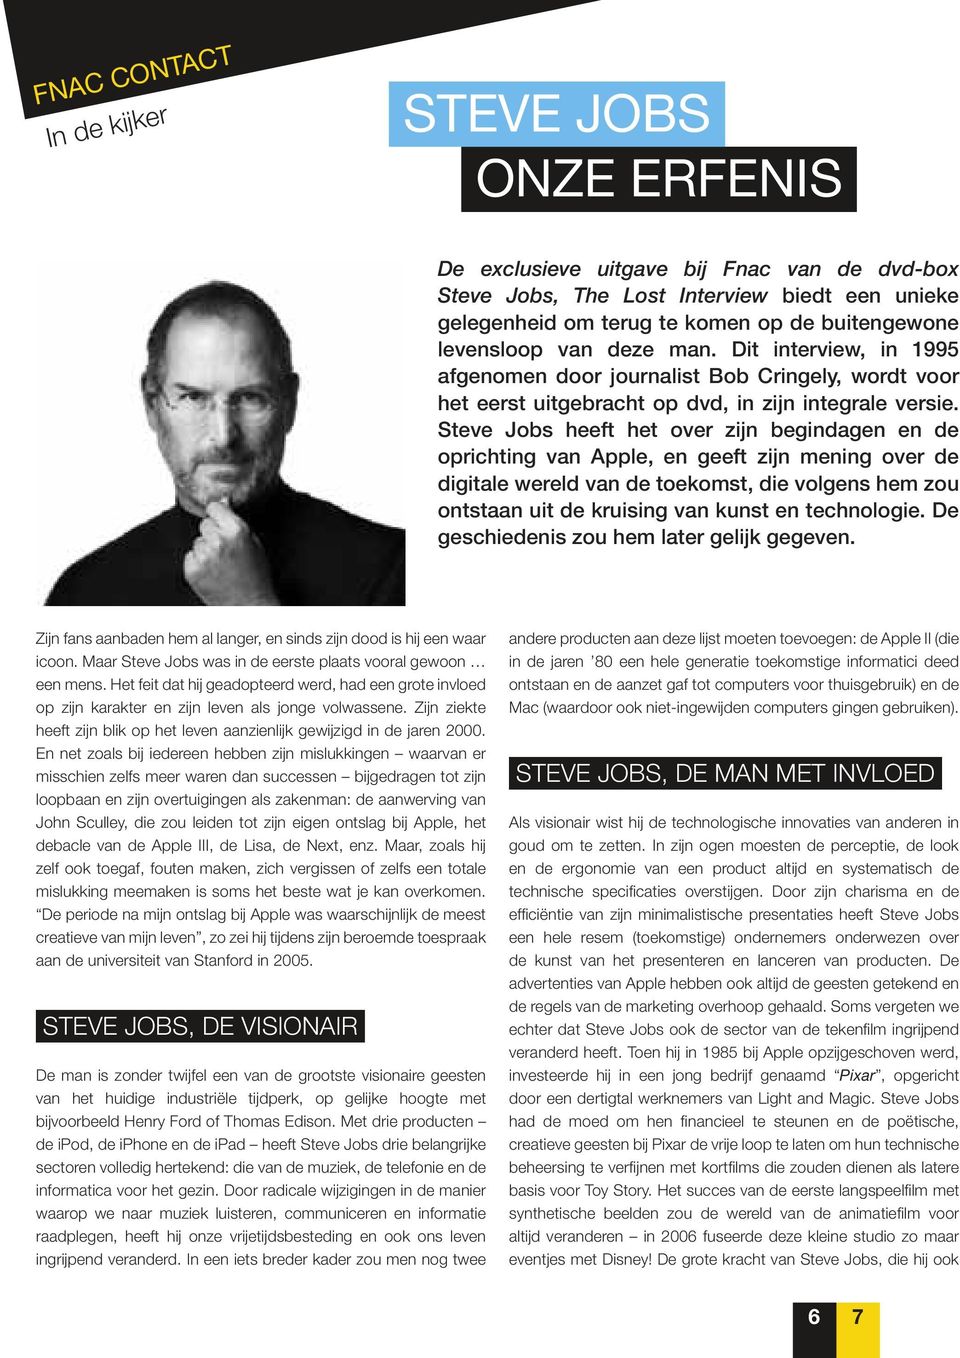 Steve Jobs heeft het over zijn begindagen en de oprichting van Apple, en geeft zijn mening over de digitale wereld van de toekomst, die volgens hem zou ontstaan uit de kruising van kunst en